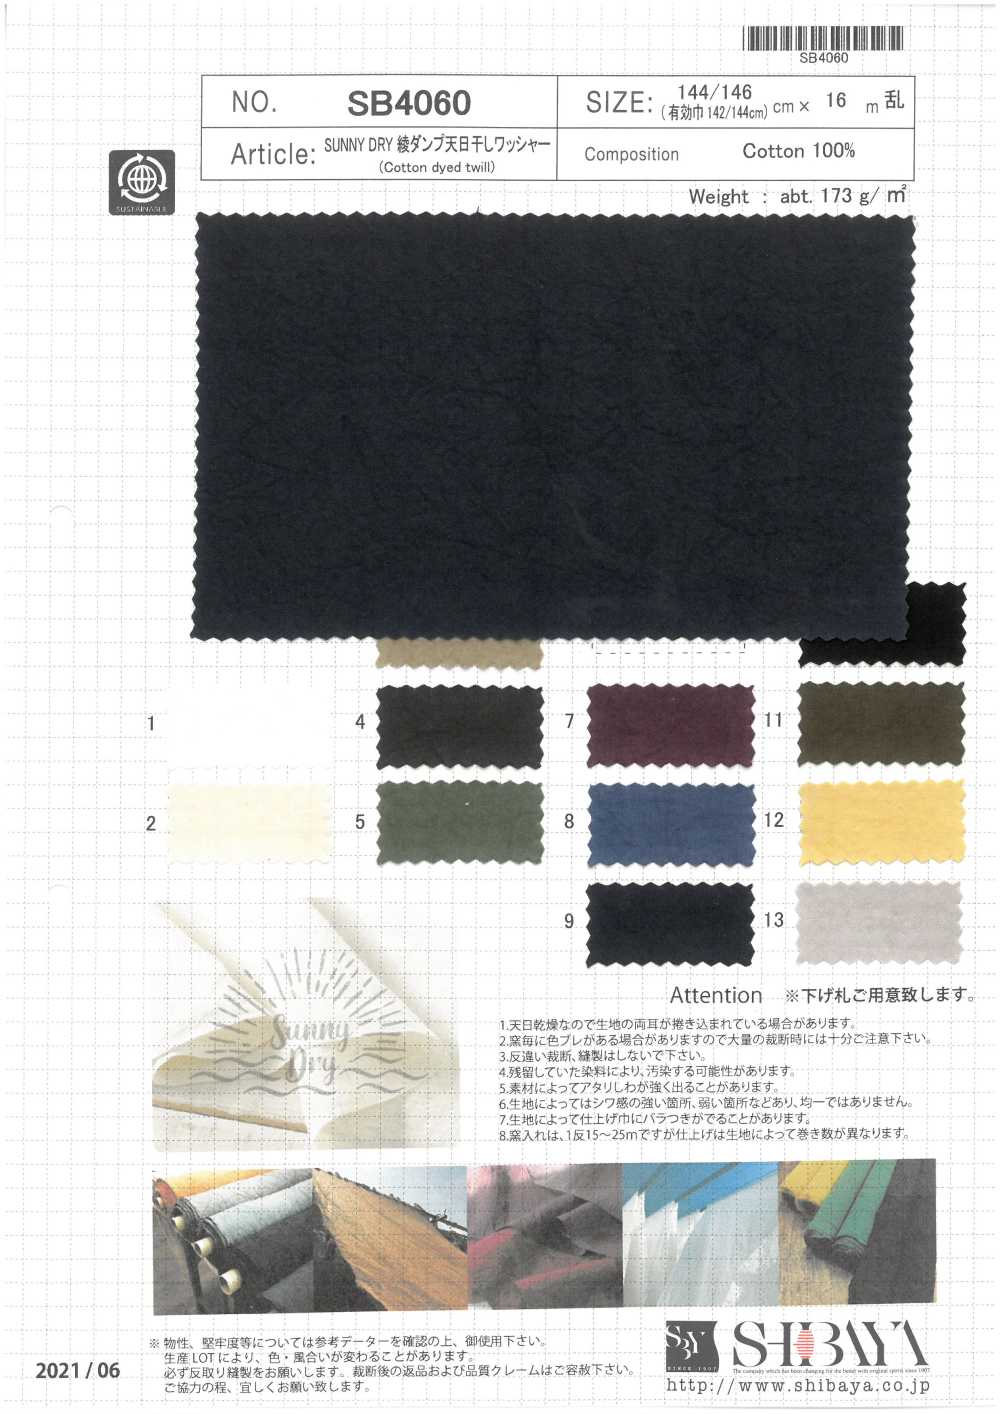 SB4060 Traitement De La Laveuse Séchée Au Soleil SUNNY DRY Twill Weave Dump[Fabrication De Textile] SHIBAYA